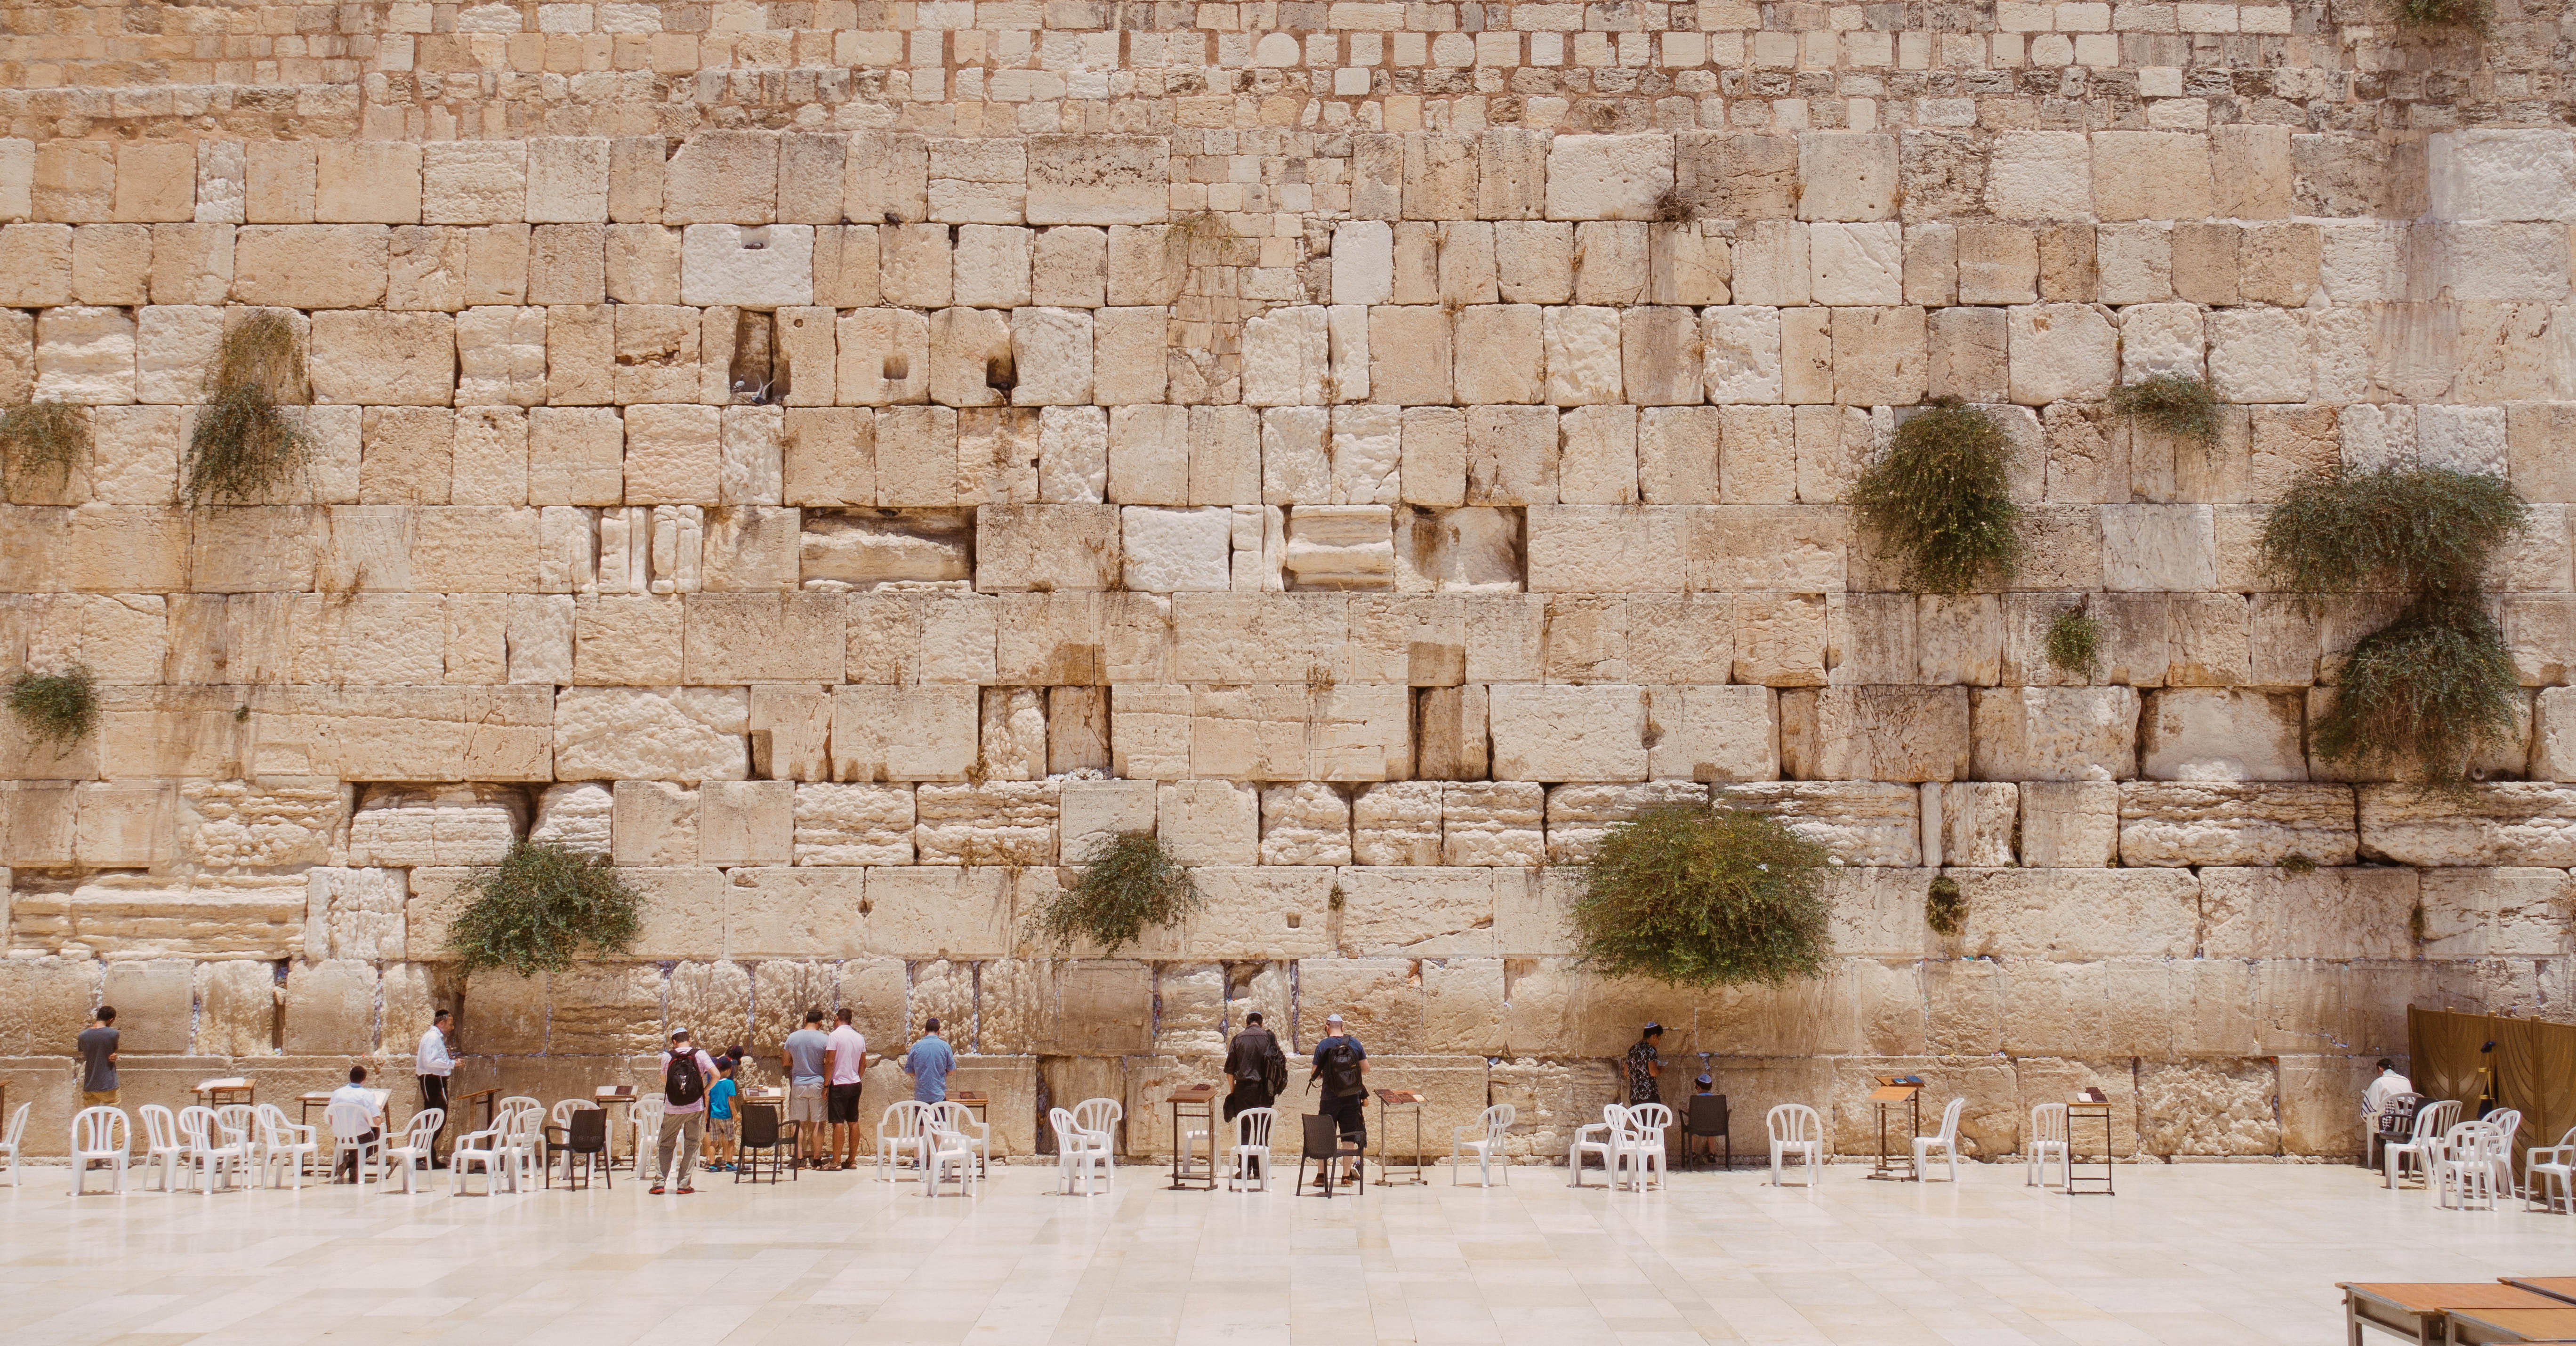 Jerusalem Background